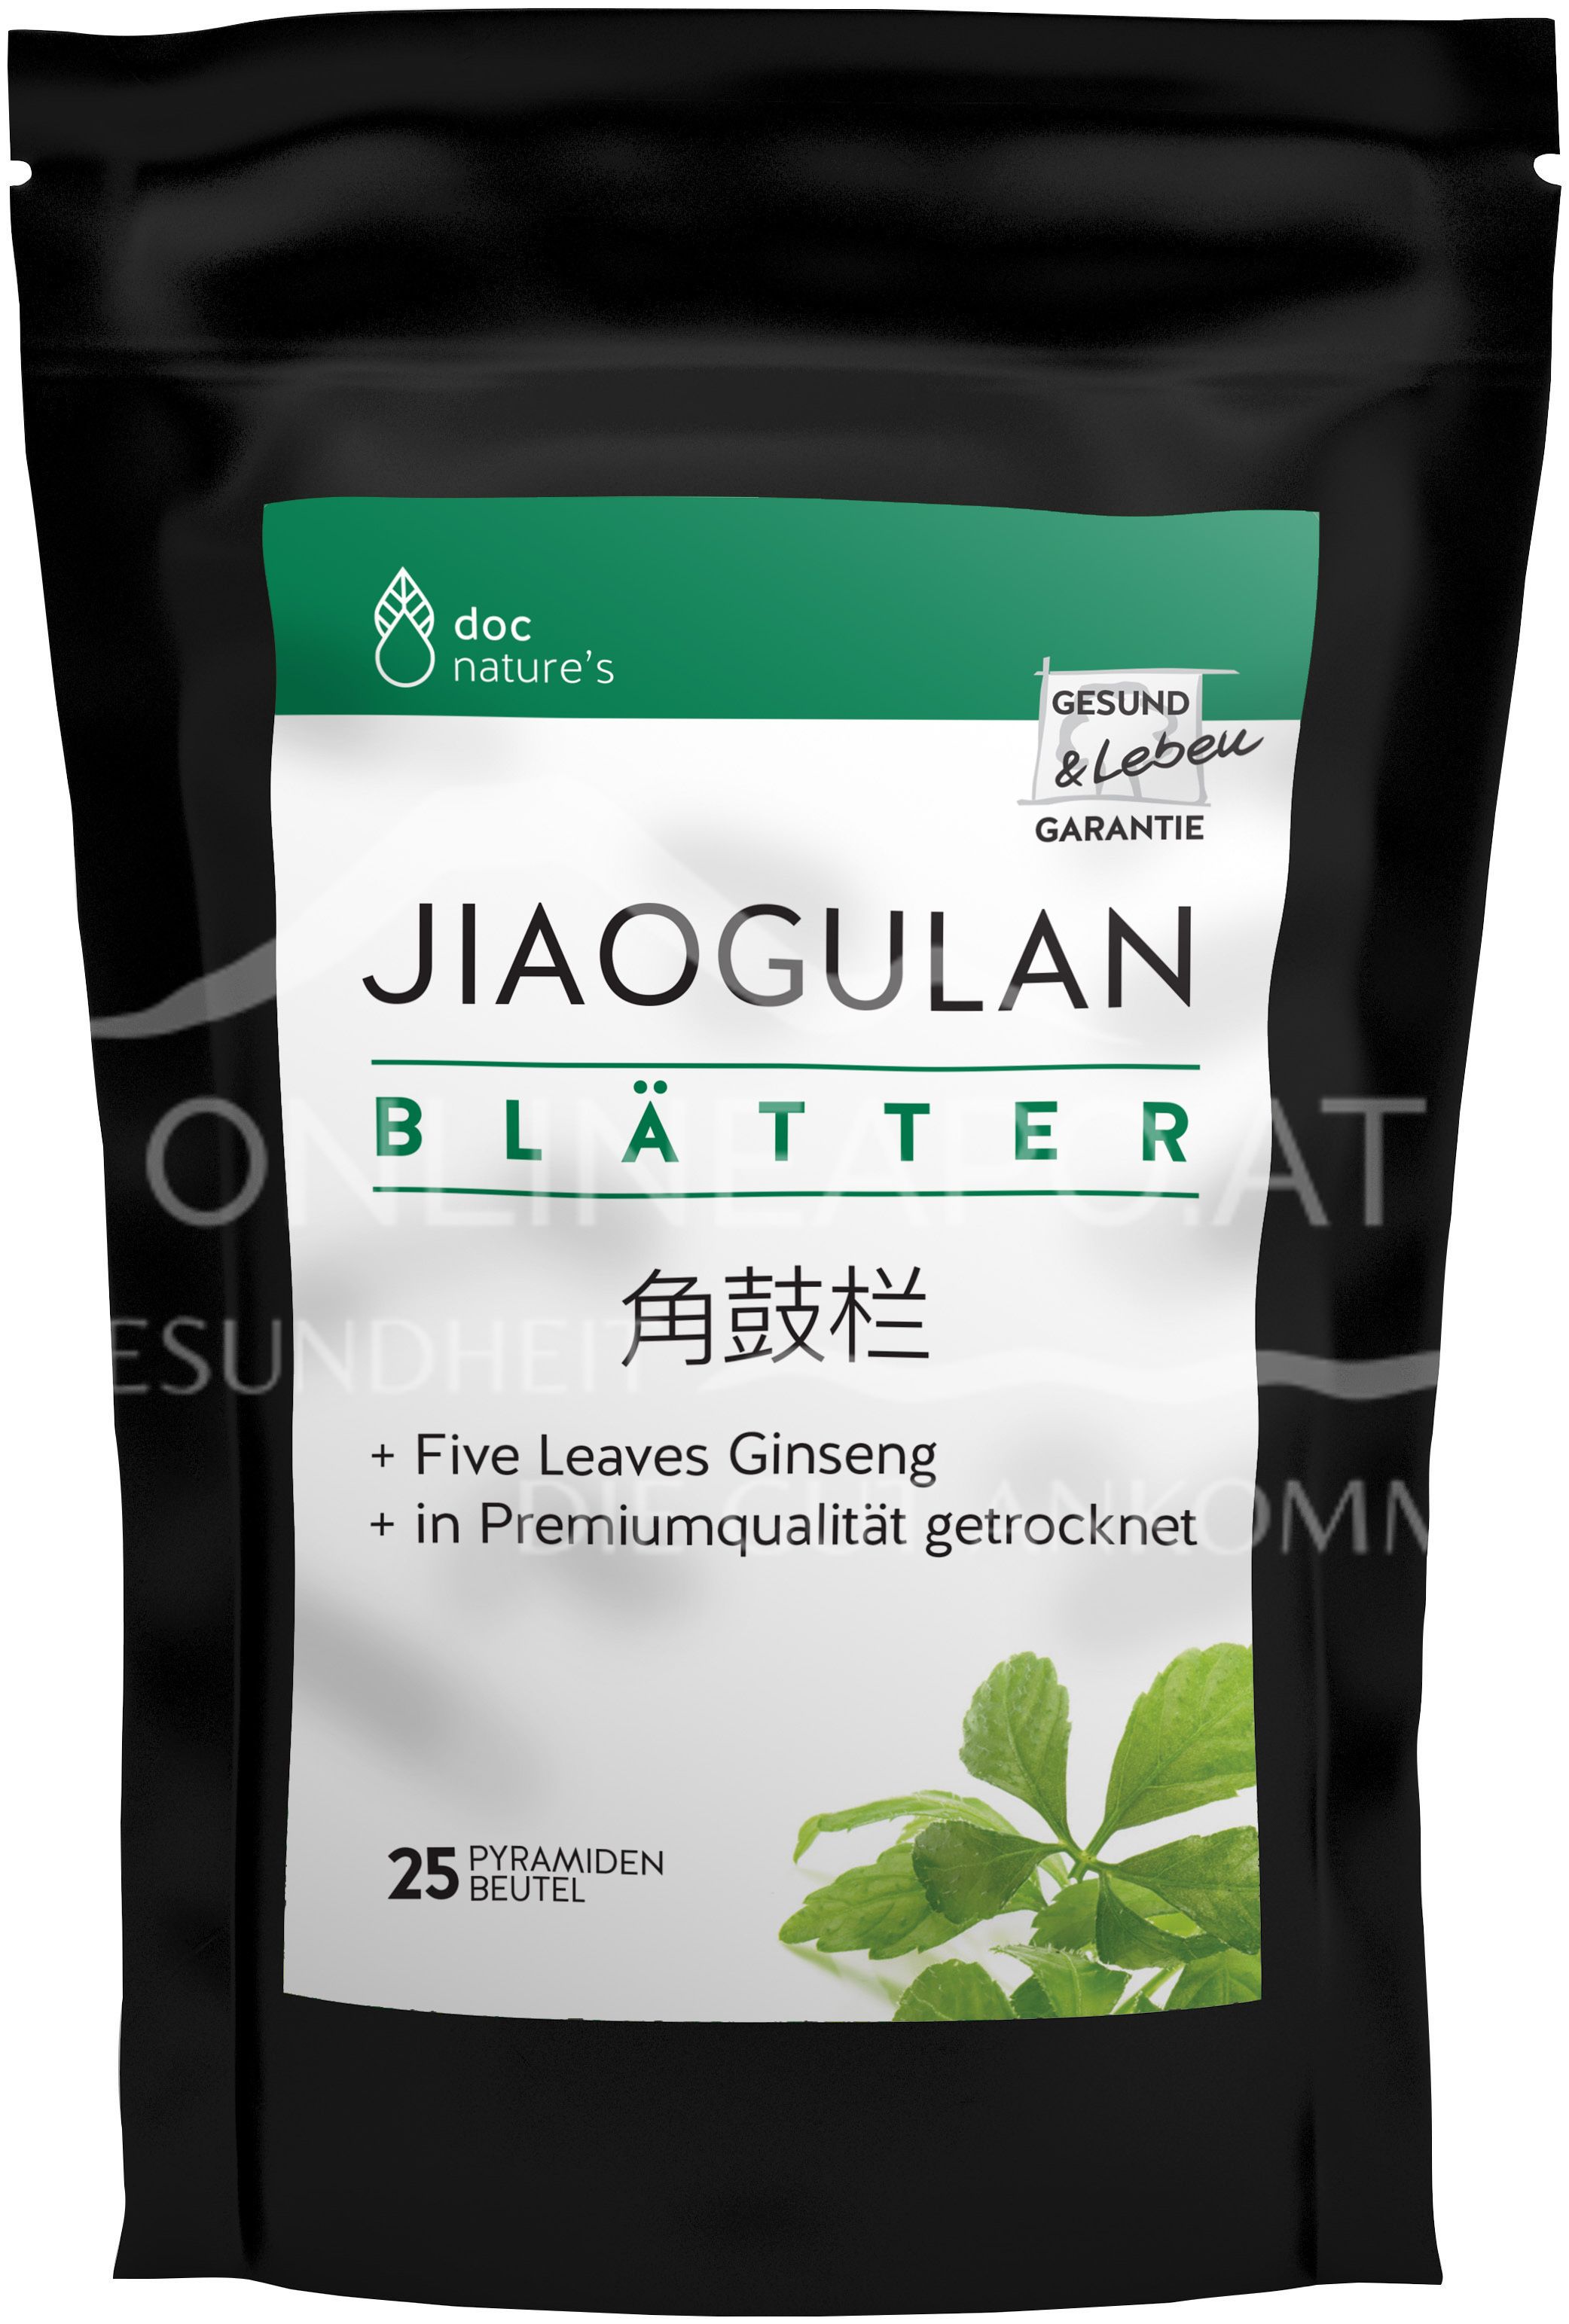 doc nature’s Jiaogulan Blätter, Pyramidenbeutel 2 g